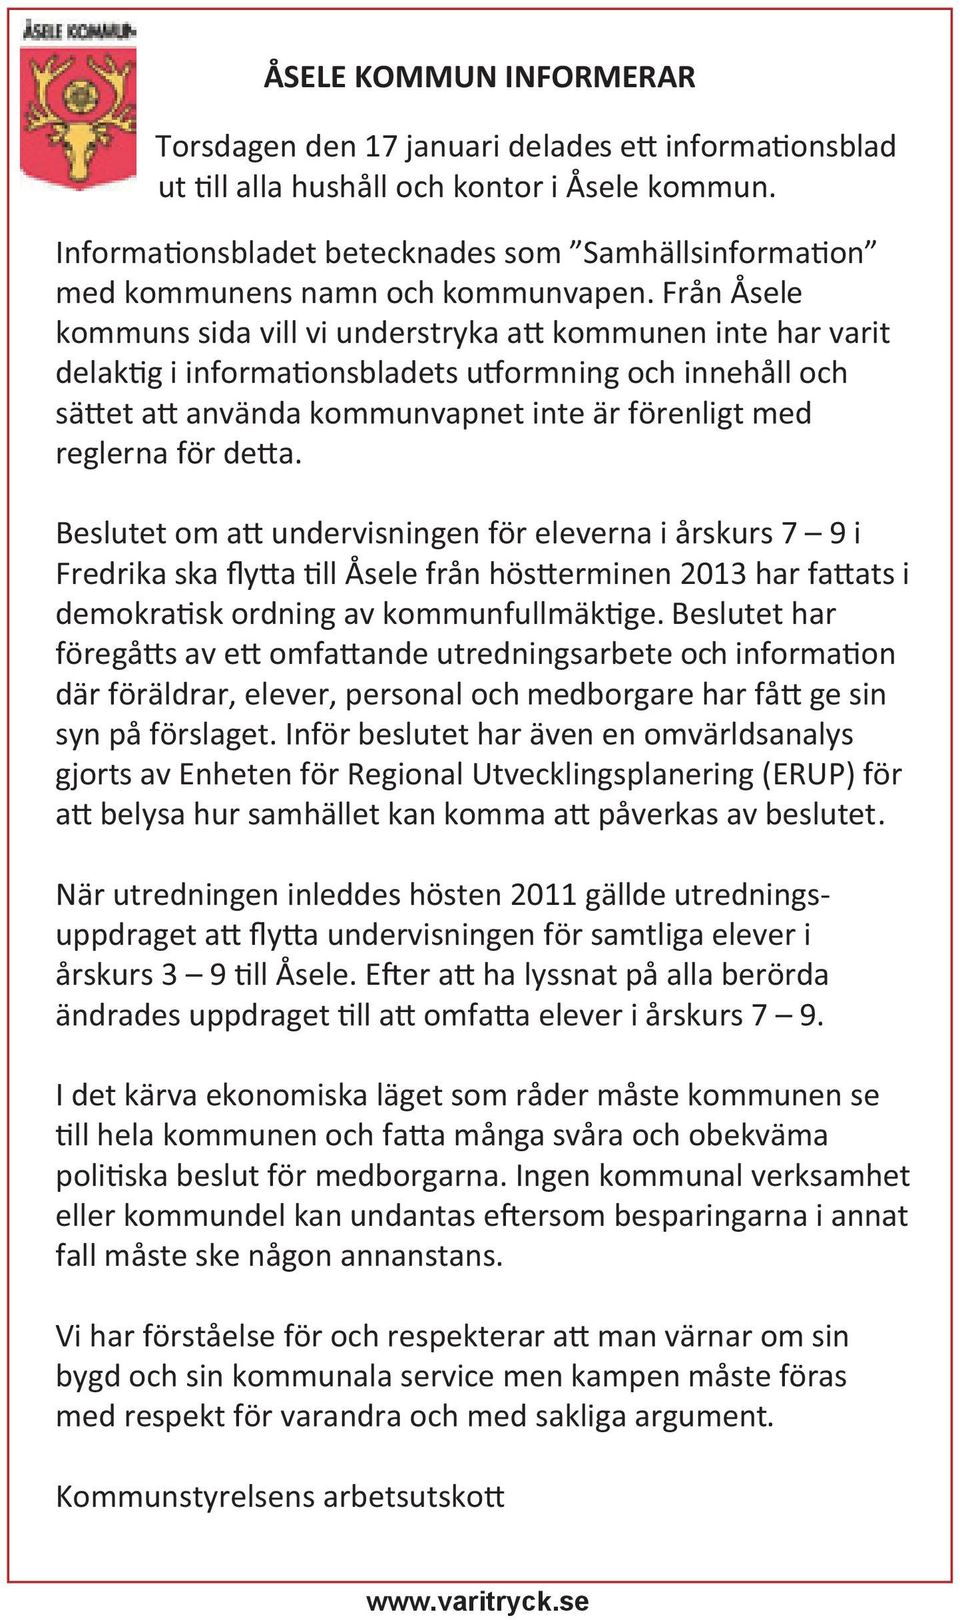 Från Åsele kommuns sida vill vi understryka a kommunen inte har varit delak g i informa onsbladets u ormning och innehåll och sä et a använda kommunvapnet inte är förenligt med reglerna för de a.